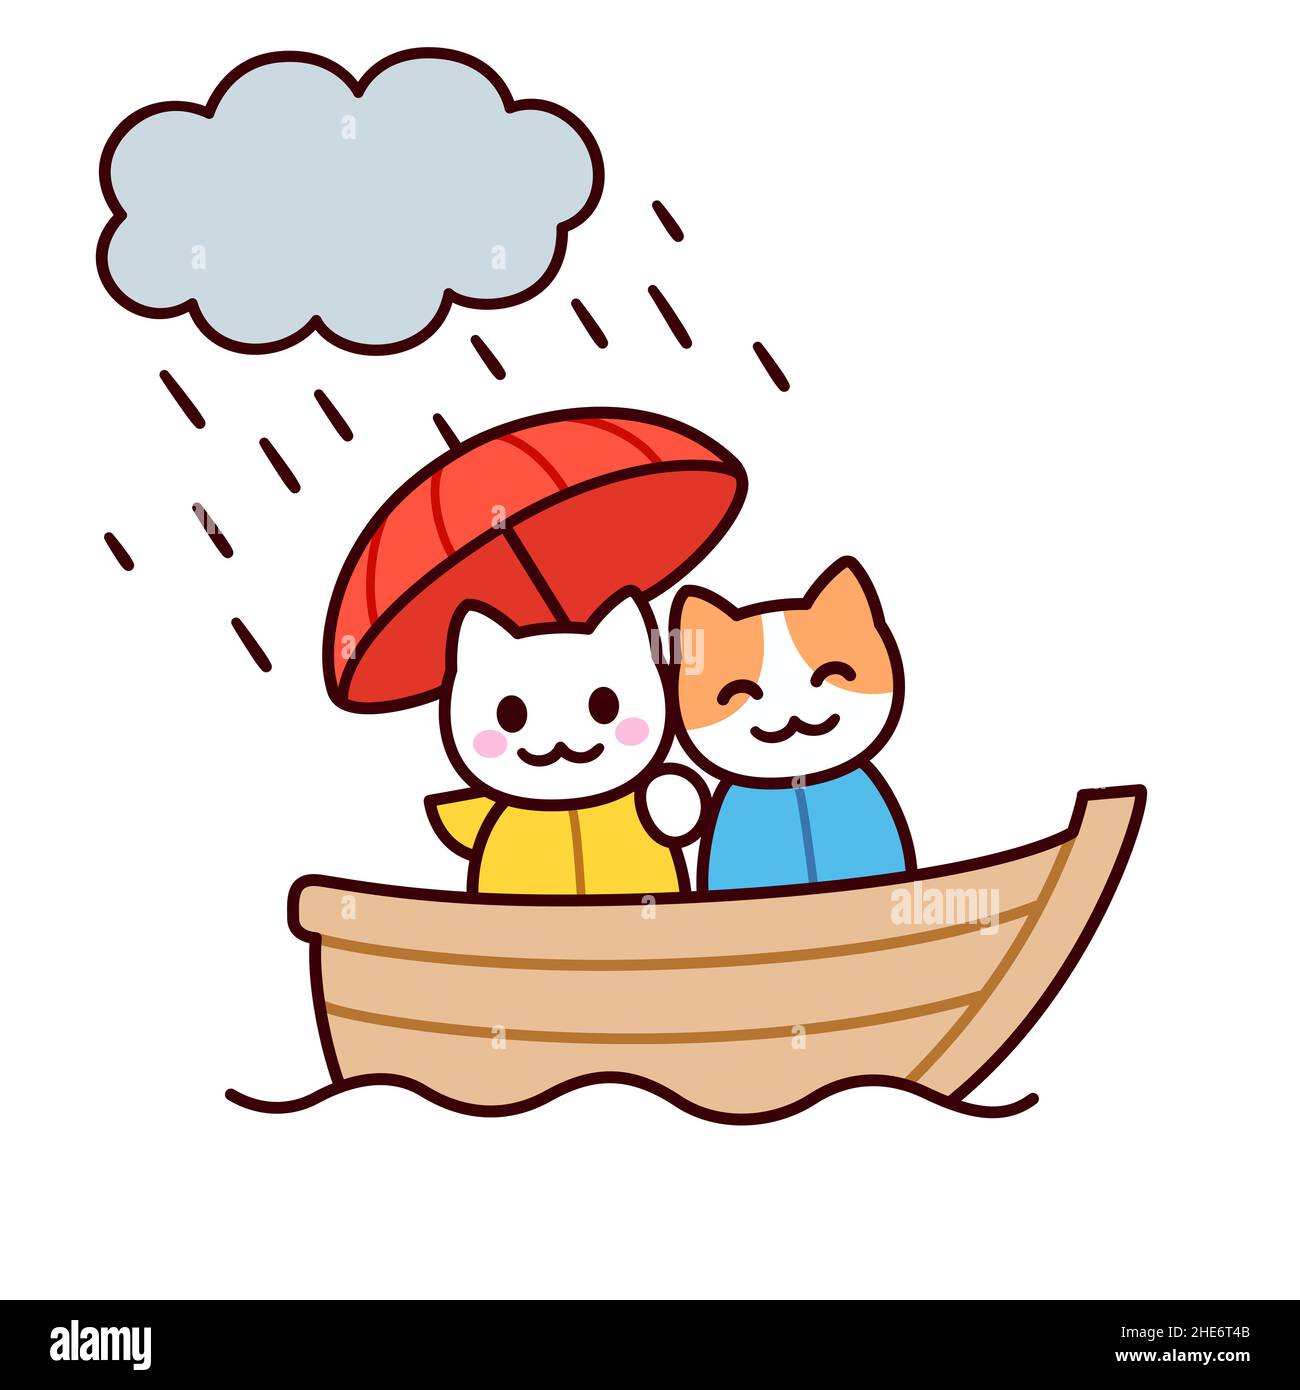 Cute Cartoon Katze paar Zeichnung auf einem Boot mit Regenschirm. Zwei Kawaii Katzen im Regen zusammen. Isolierte Vektor-Clip-Art-Illustration. Stock Vektor